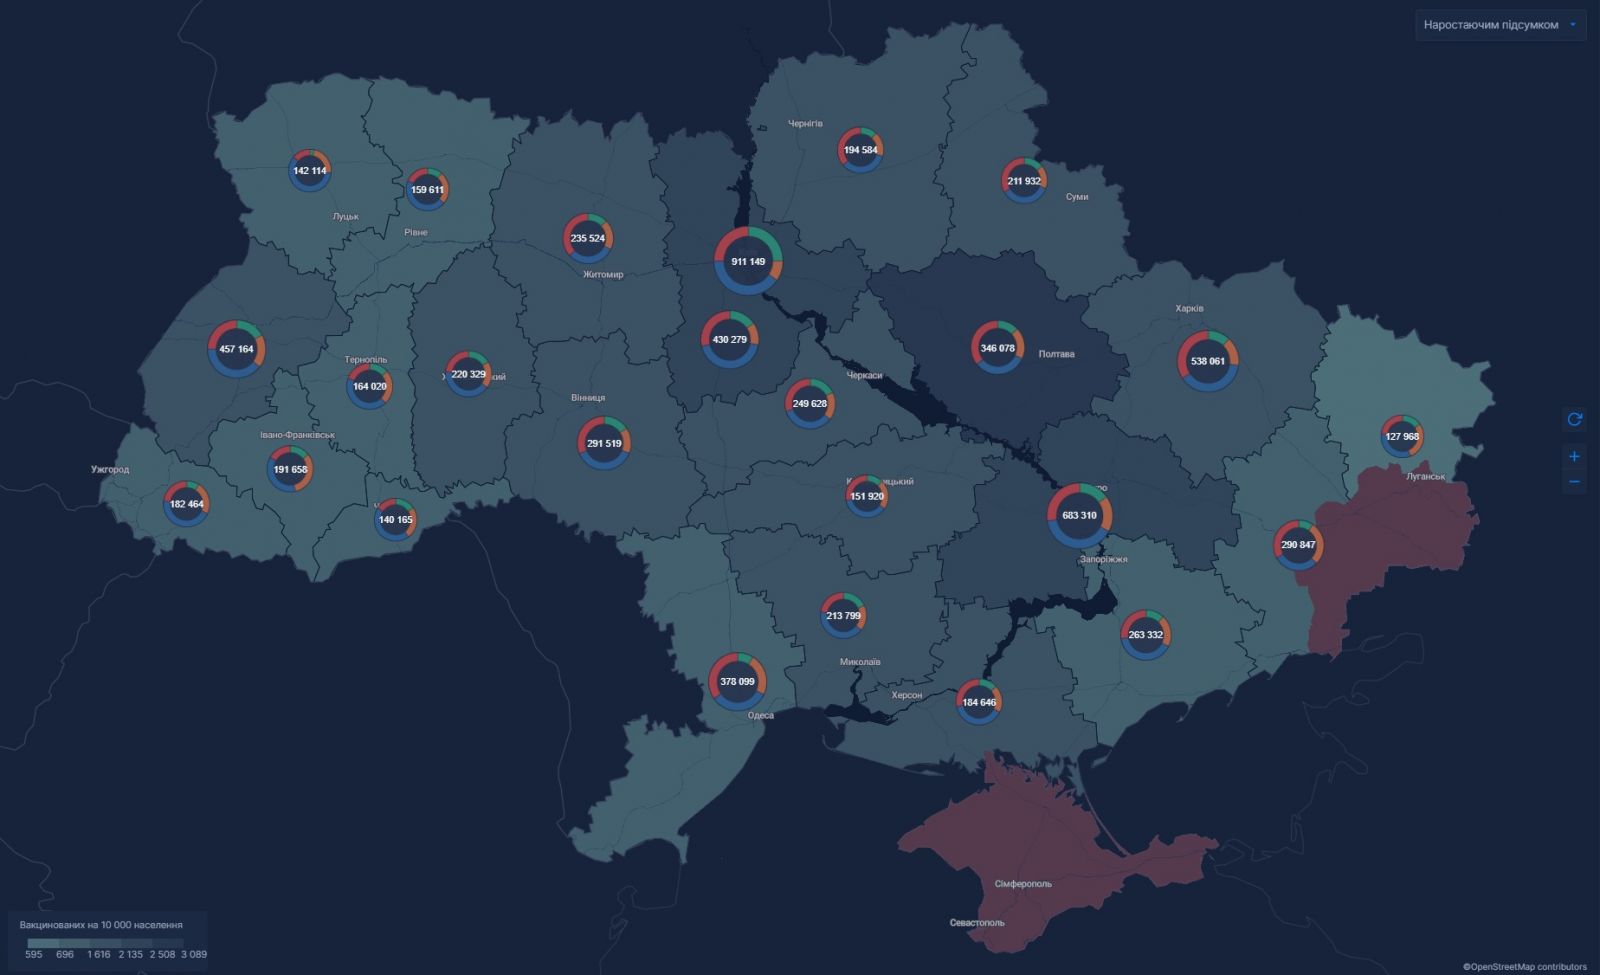 Коронавирус в Украине. Инфографика: СНБО